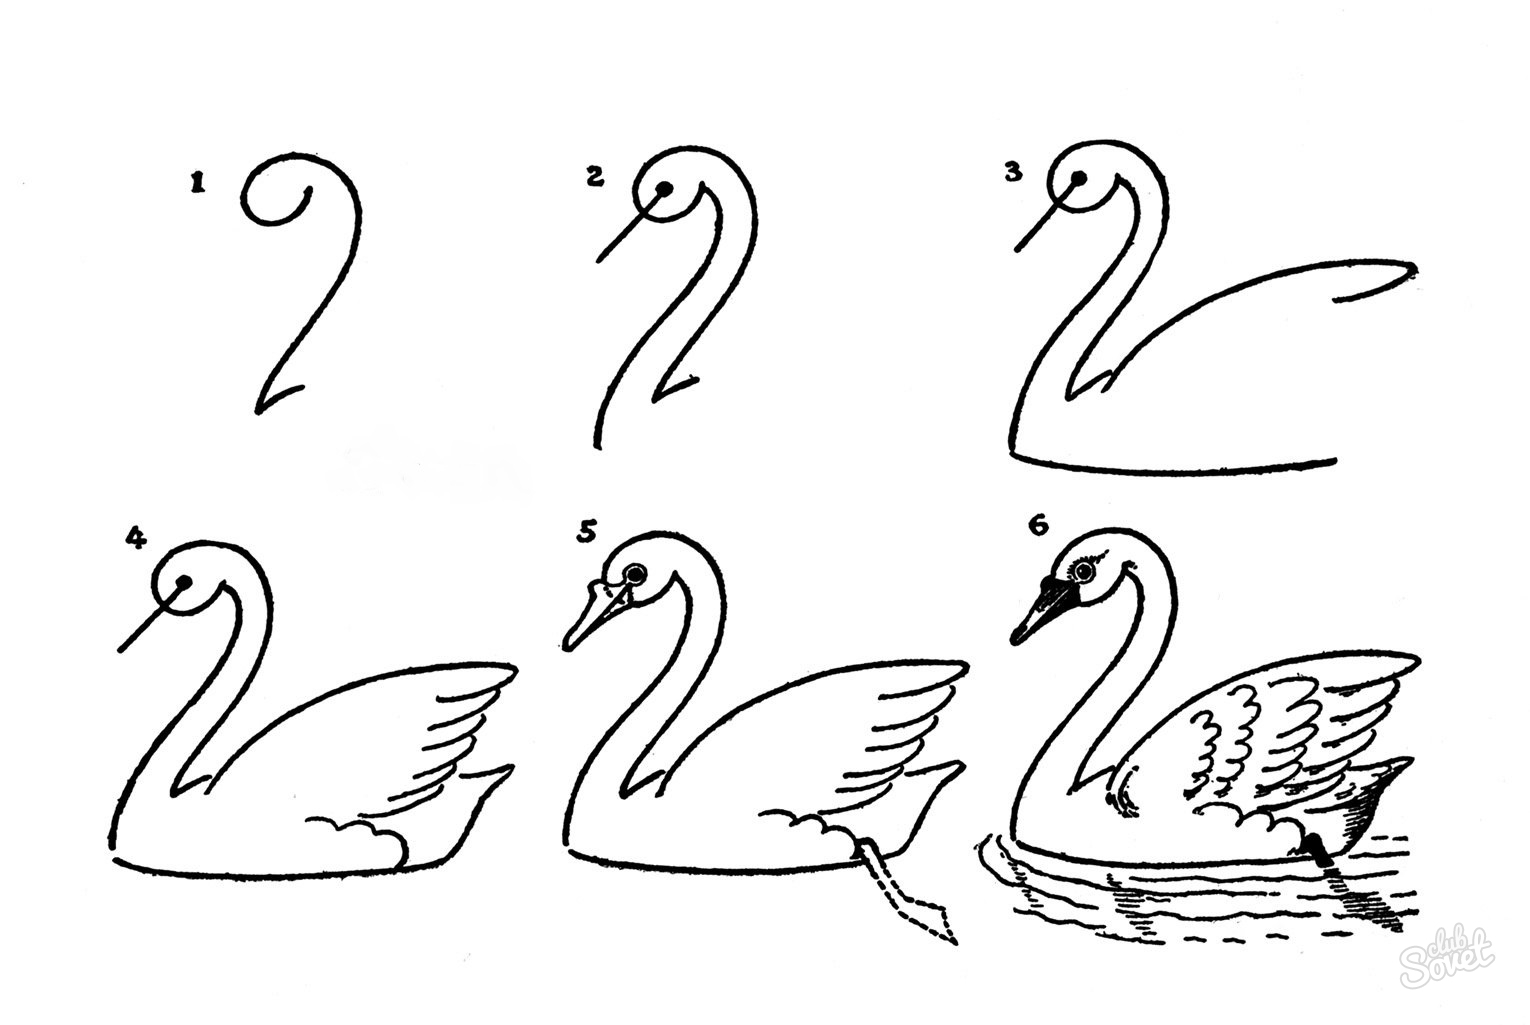 Как составить конспект занятия по рисованию на тему «Птицы»